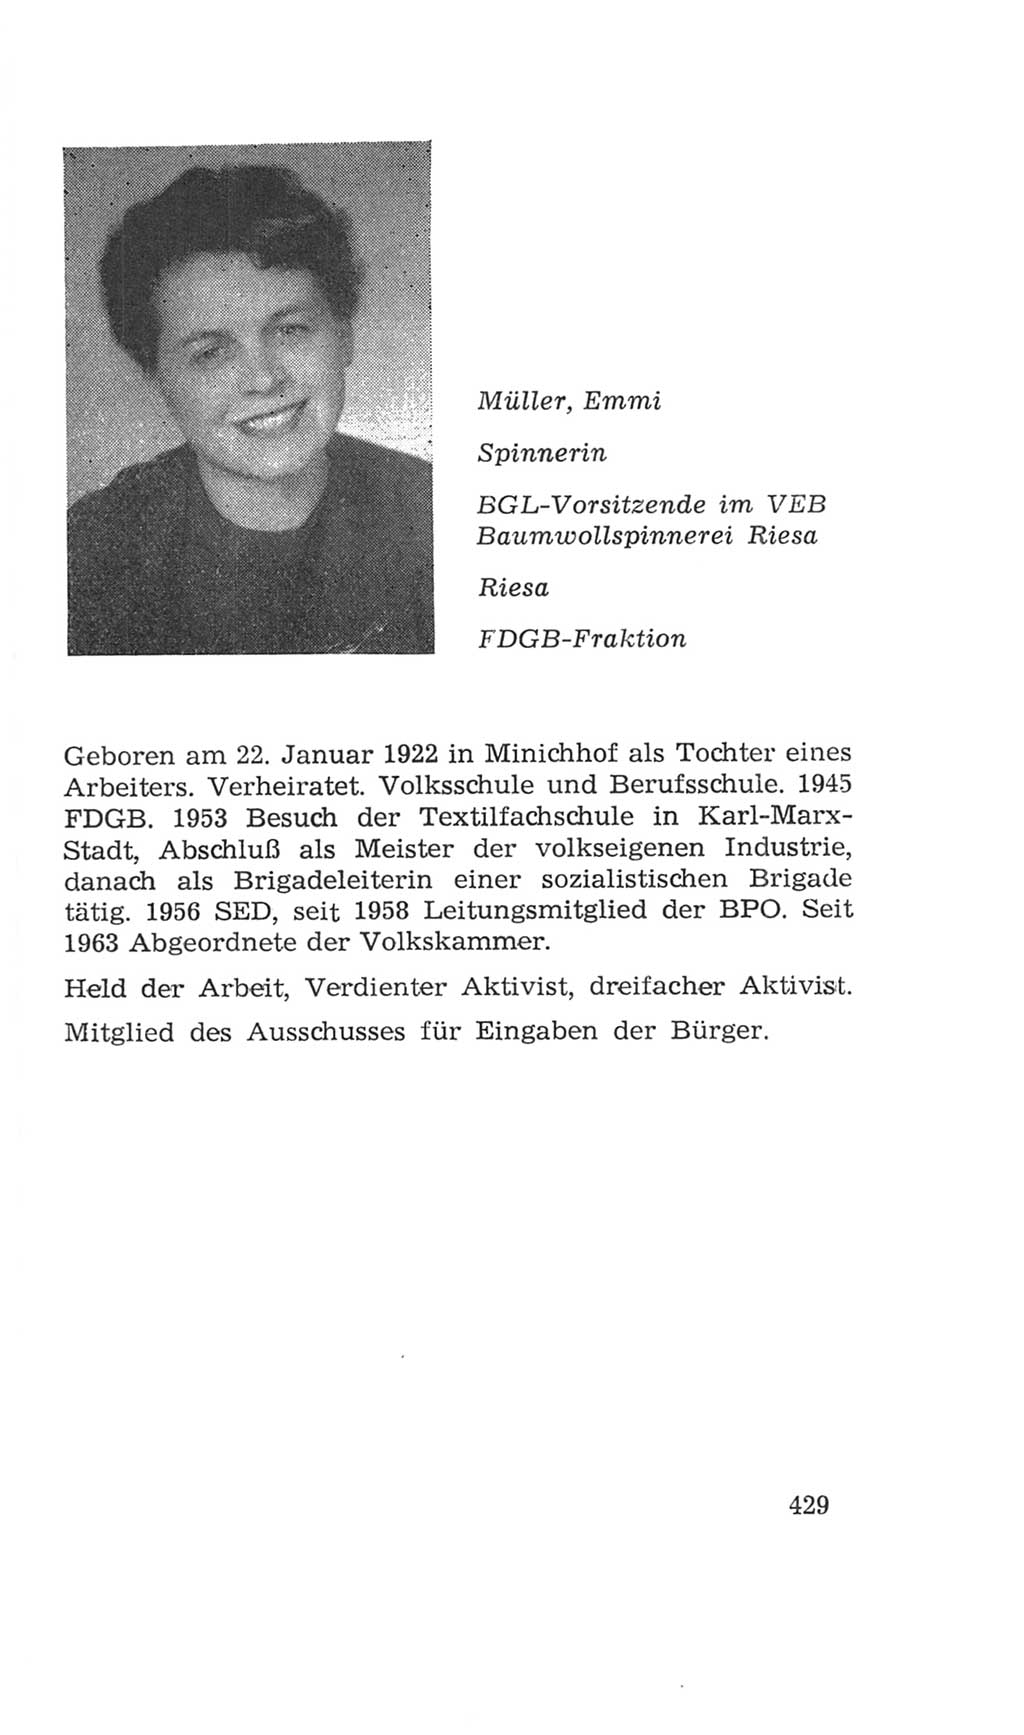 Volkskammer (VK) der Deutschen Demokratischen Republik (DDR), 4. Wahlperiode 1963-1967, Seite 429 (VK. DDR 4. WP. 1963-1967, S. 429)